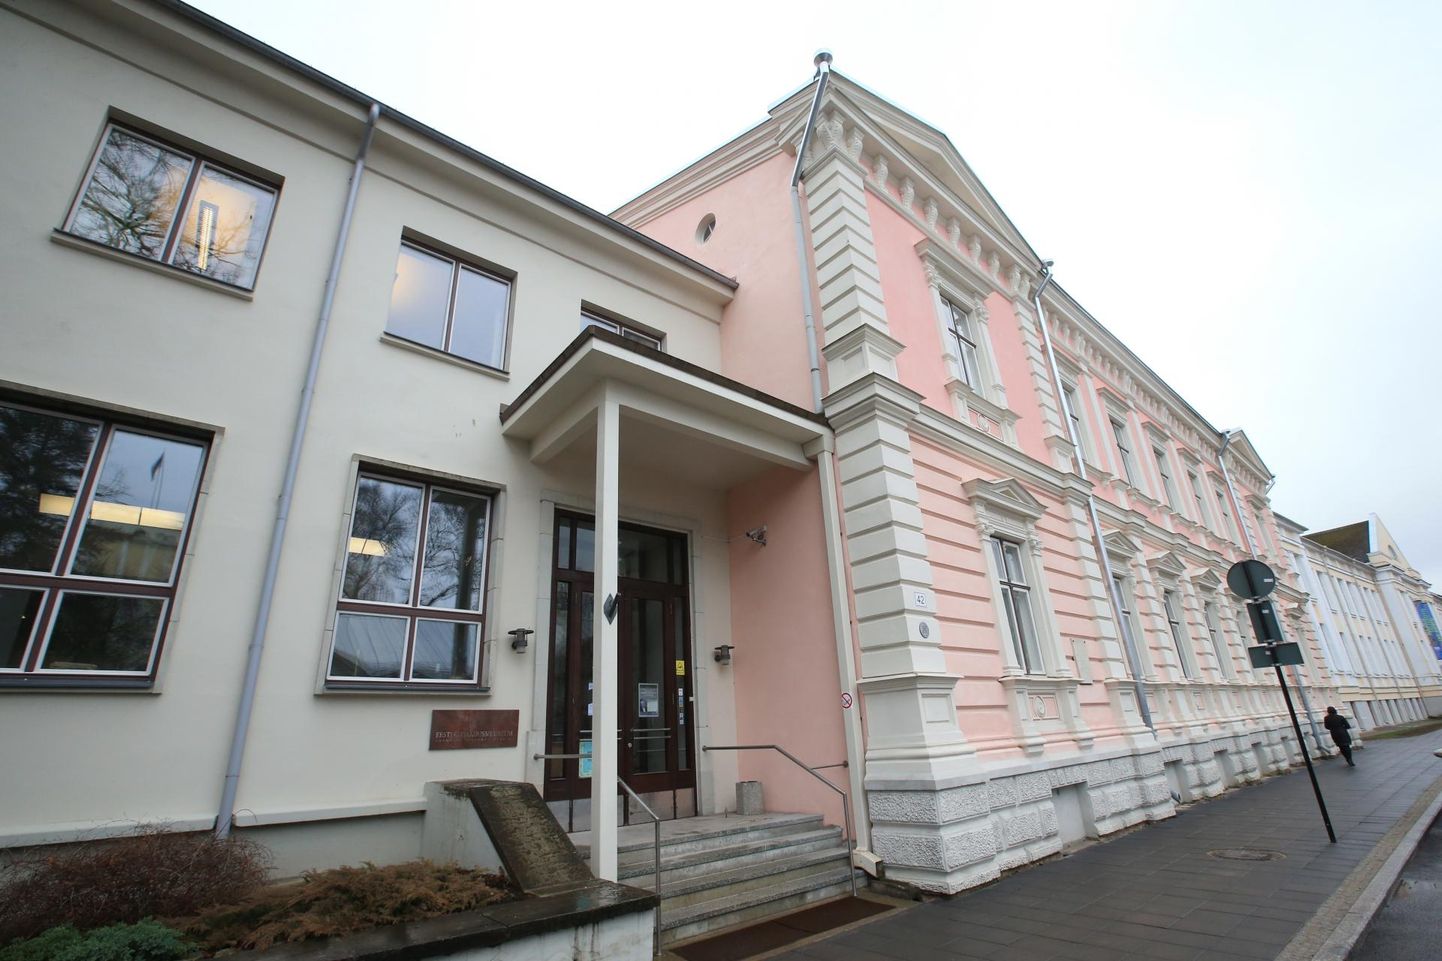 Eesti kirjandusmuuseum talletab nii muistseid kui ka tänapäevaseid pärimusi.